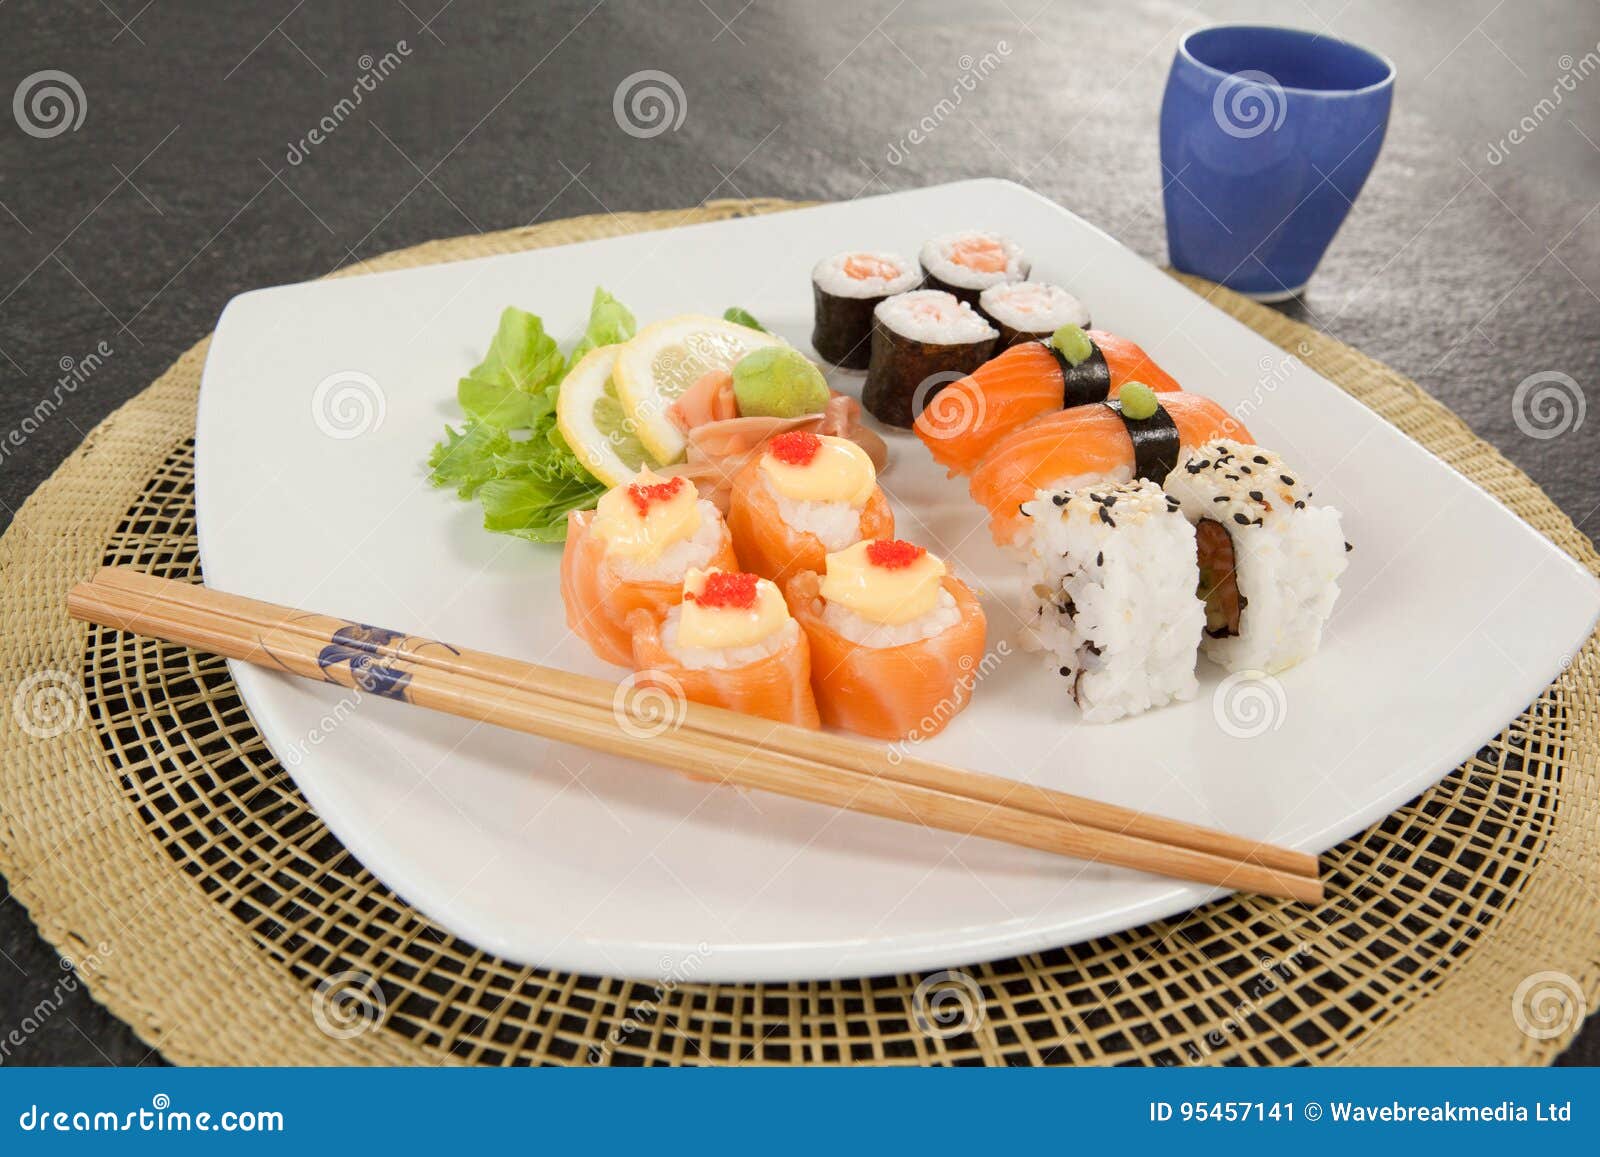 Geassorteerde die sushireeks met eetstokjes en glas op sushimat wordt gediend. De geassorteerde sushireeks diende met eetstokjes en glas op sushimat tegen zwarte achtergrond